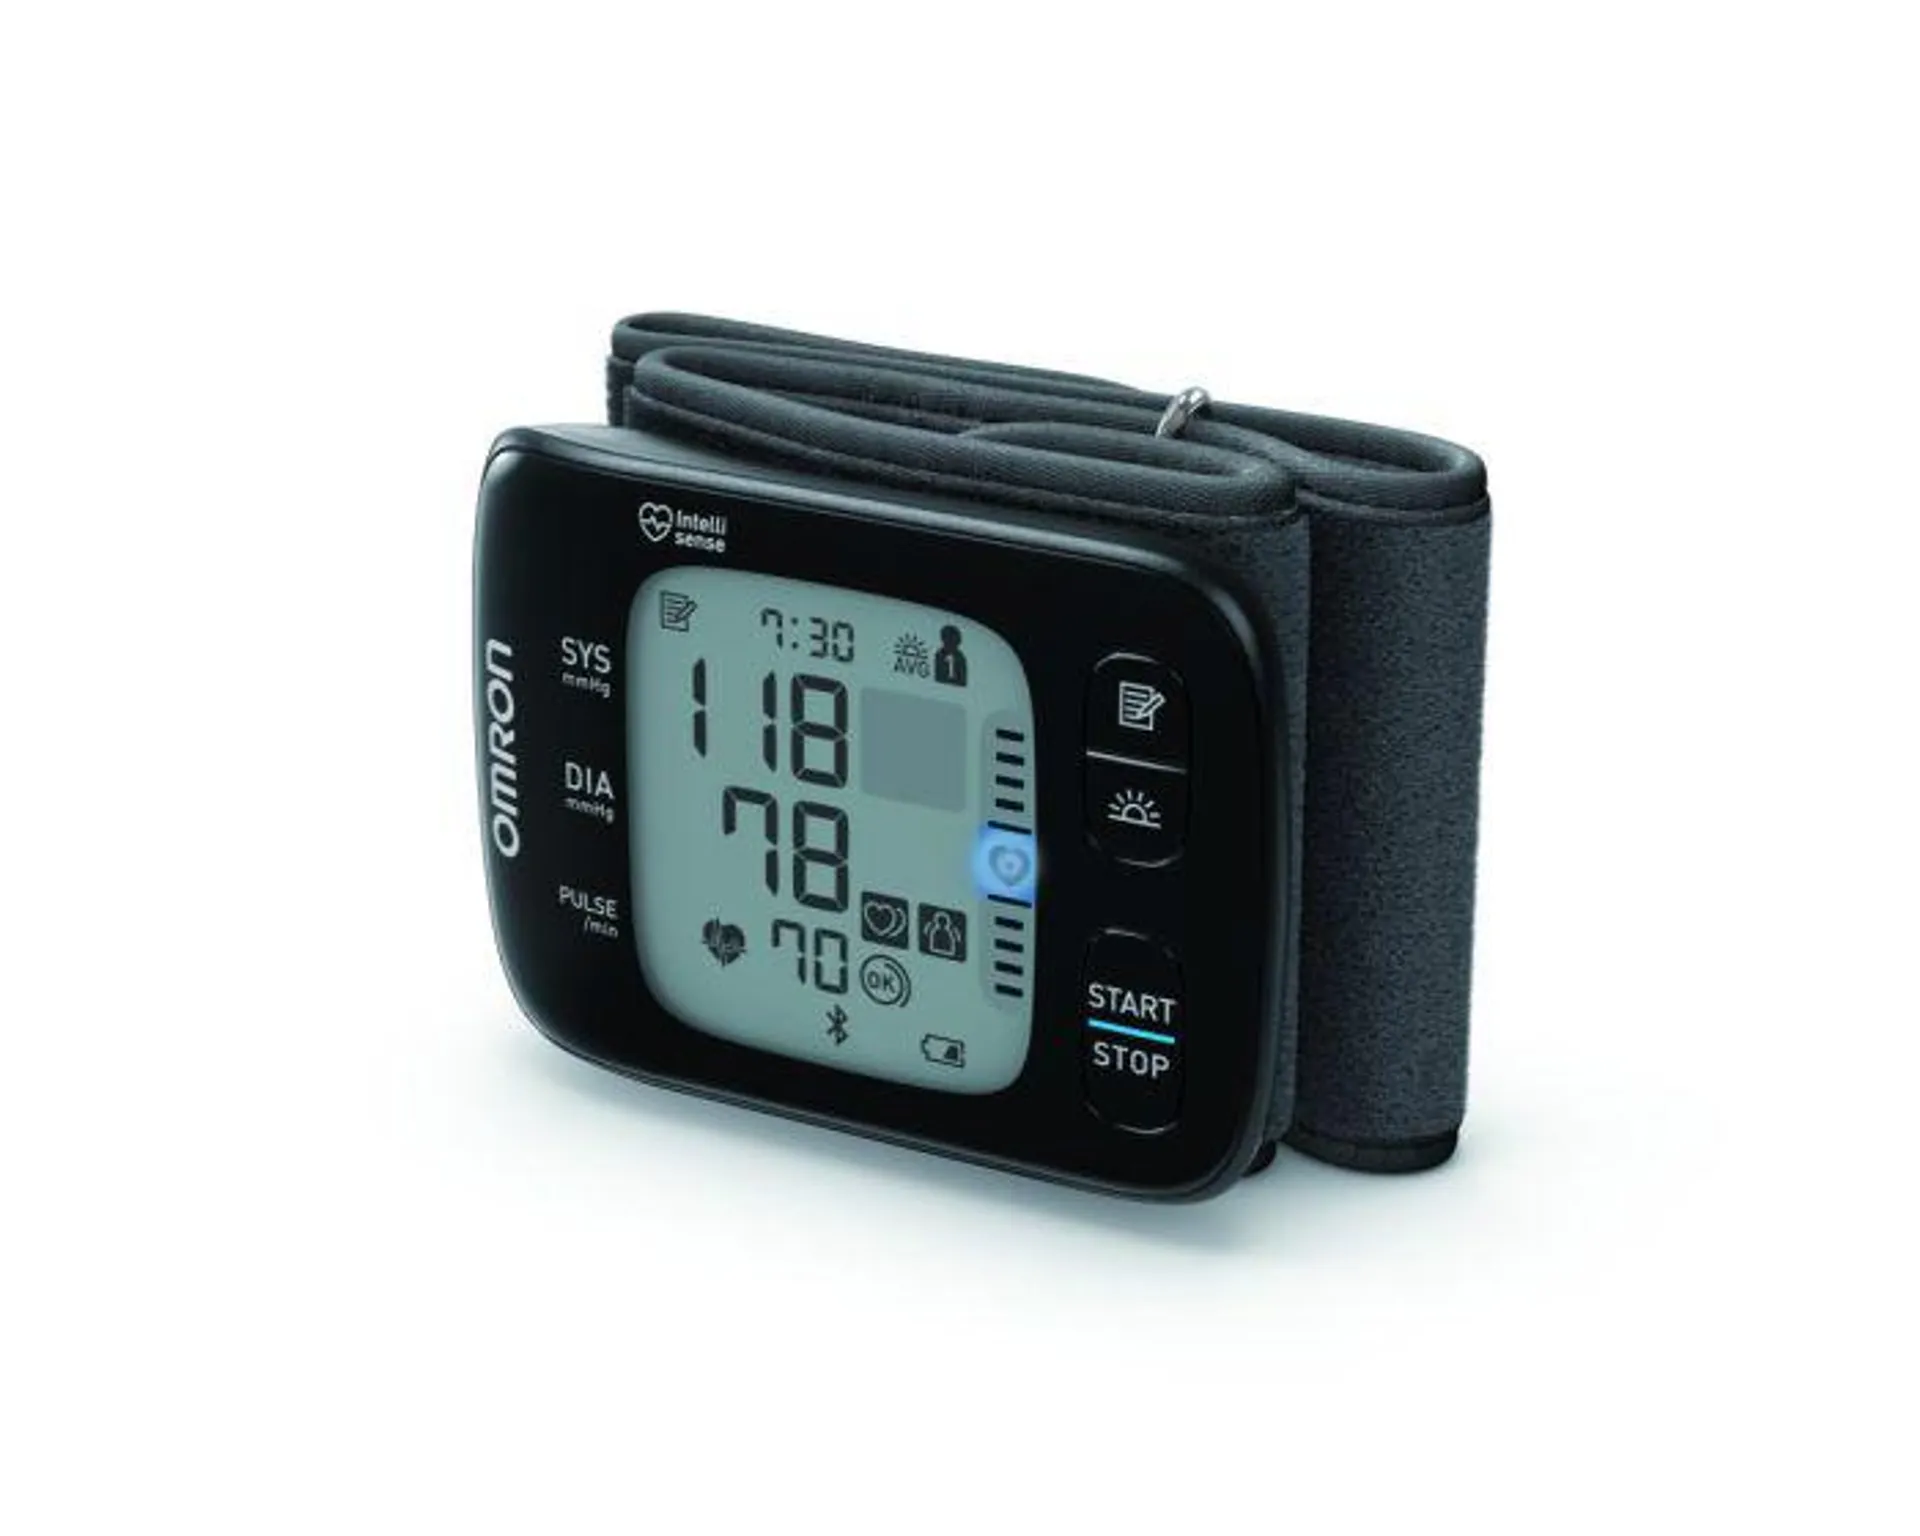 OMRON Handgelenk-Blutdruckmessgerät RS7 Intelli IT